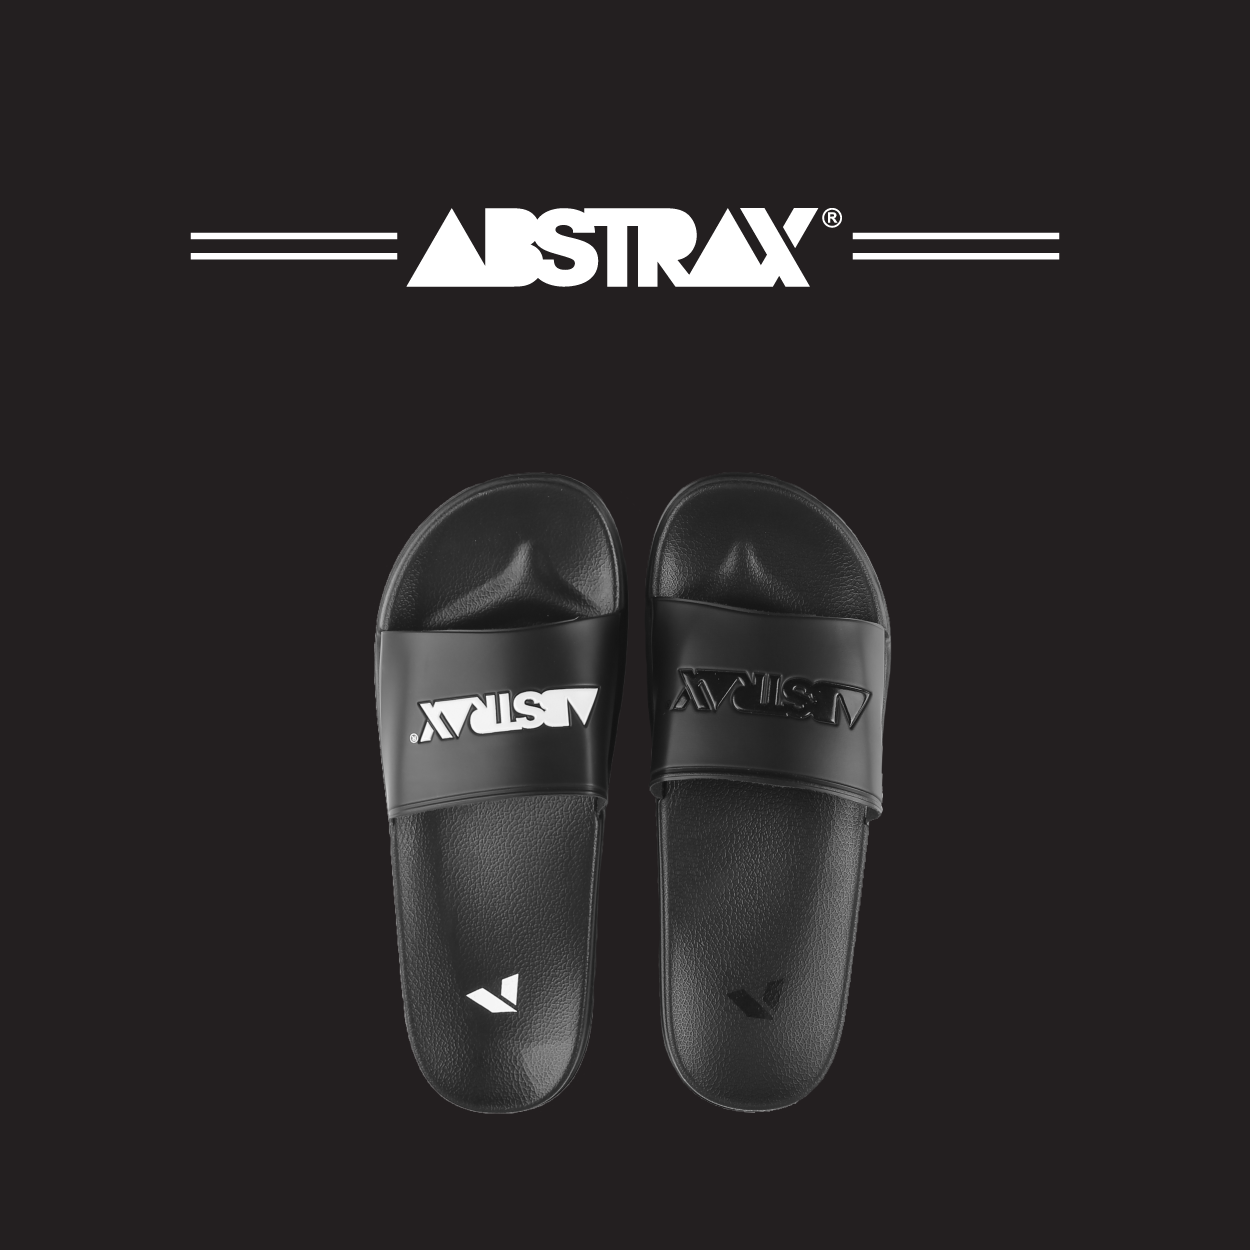 ABSTRAX® Logotype